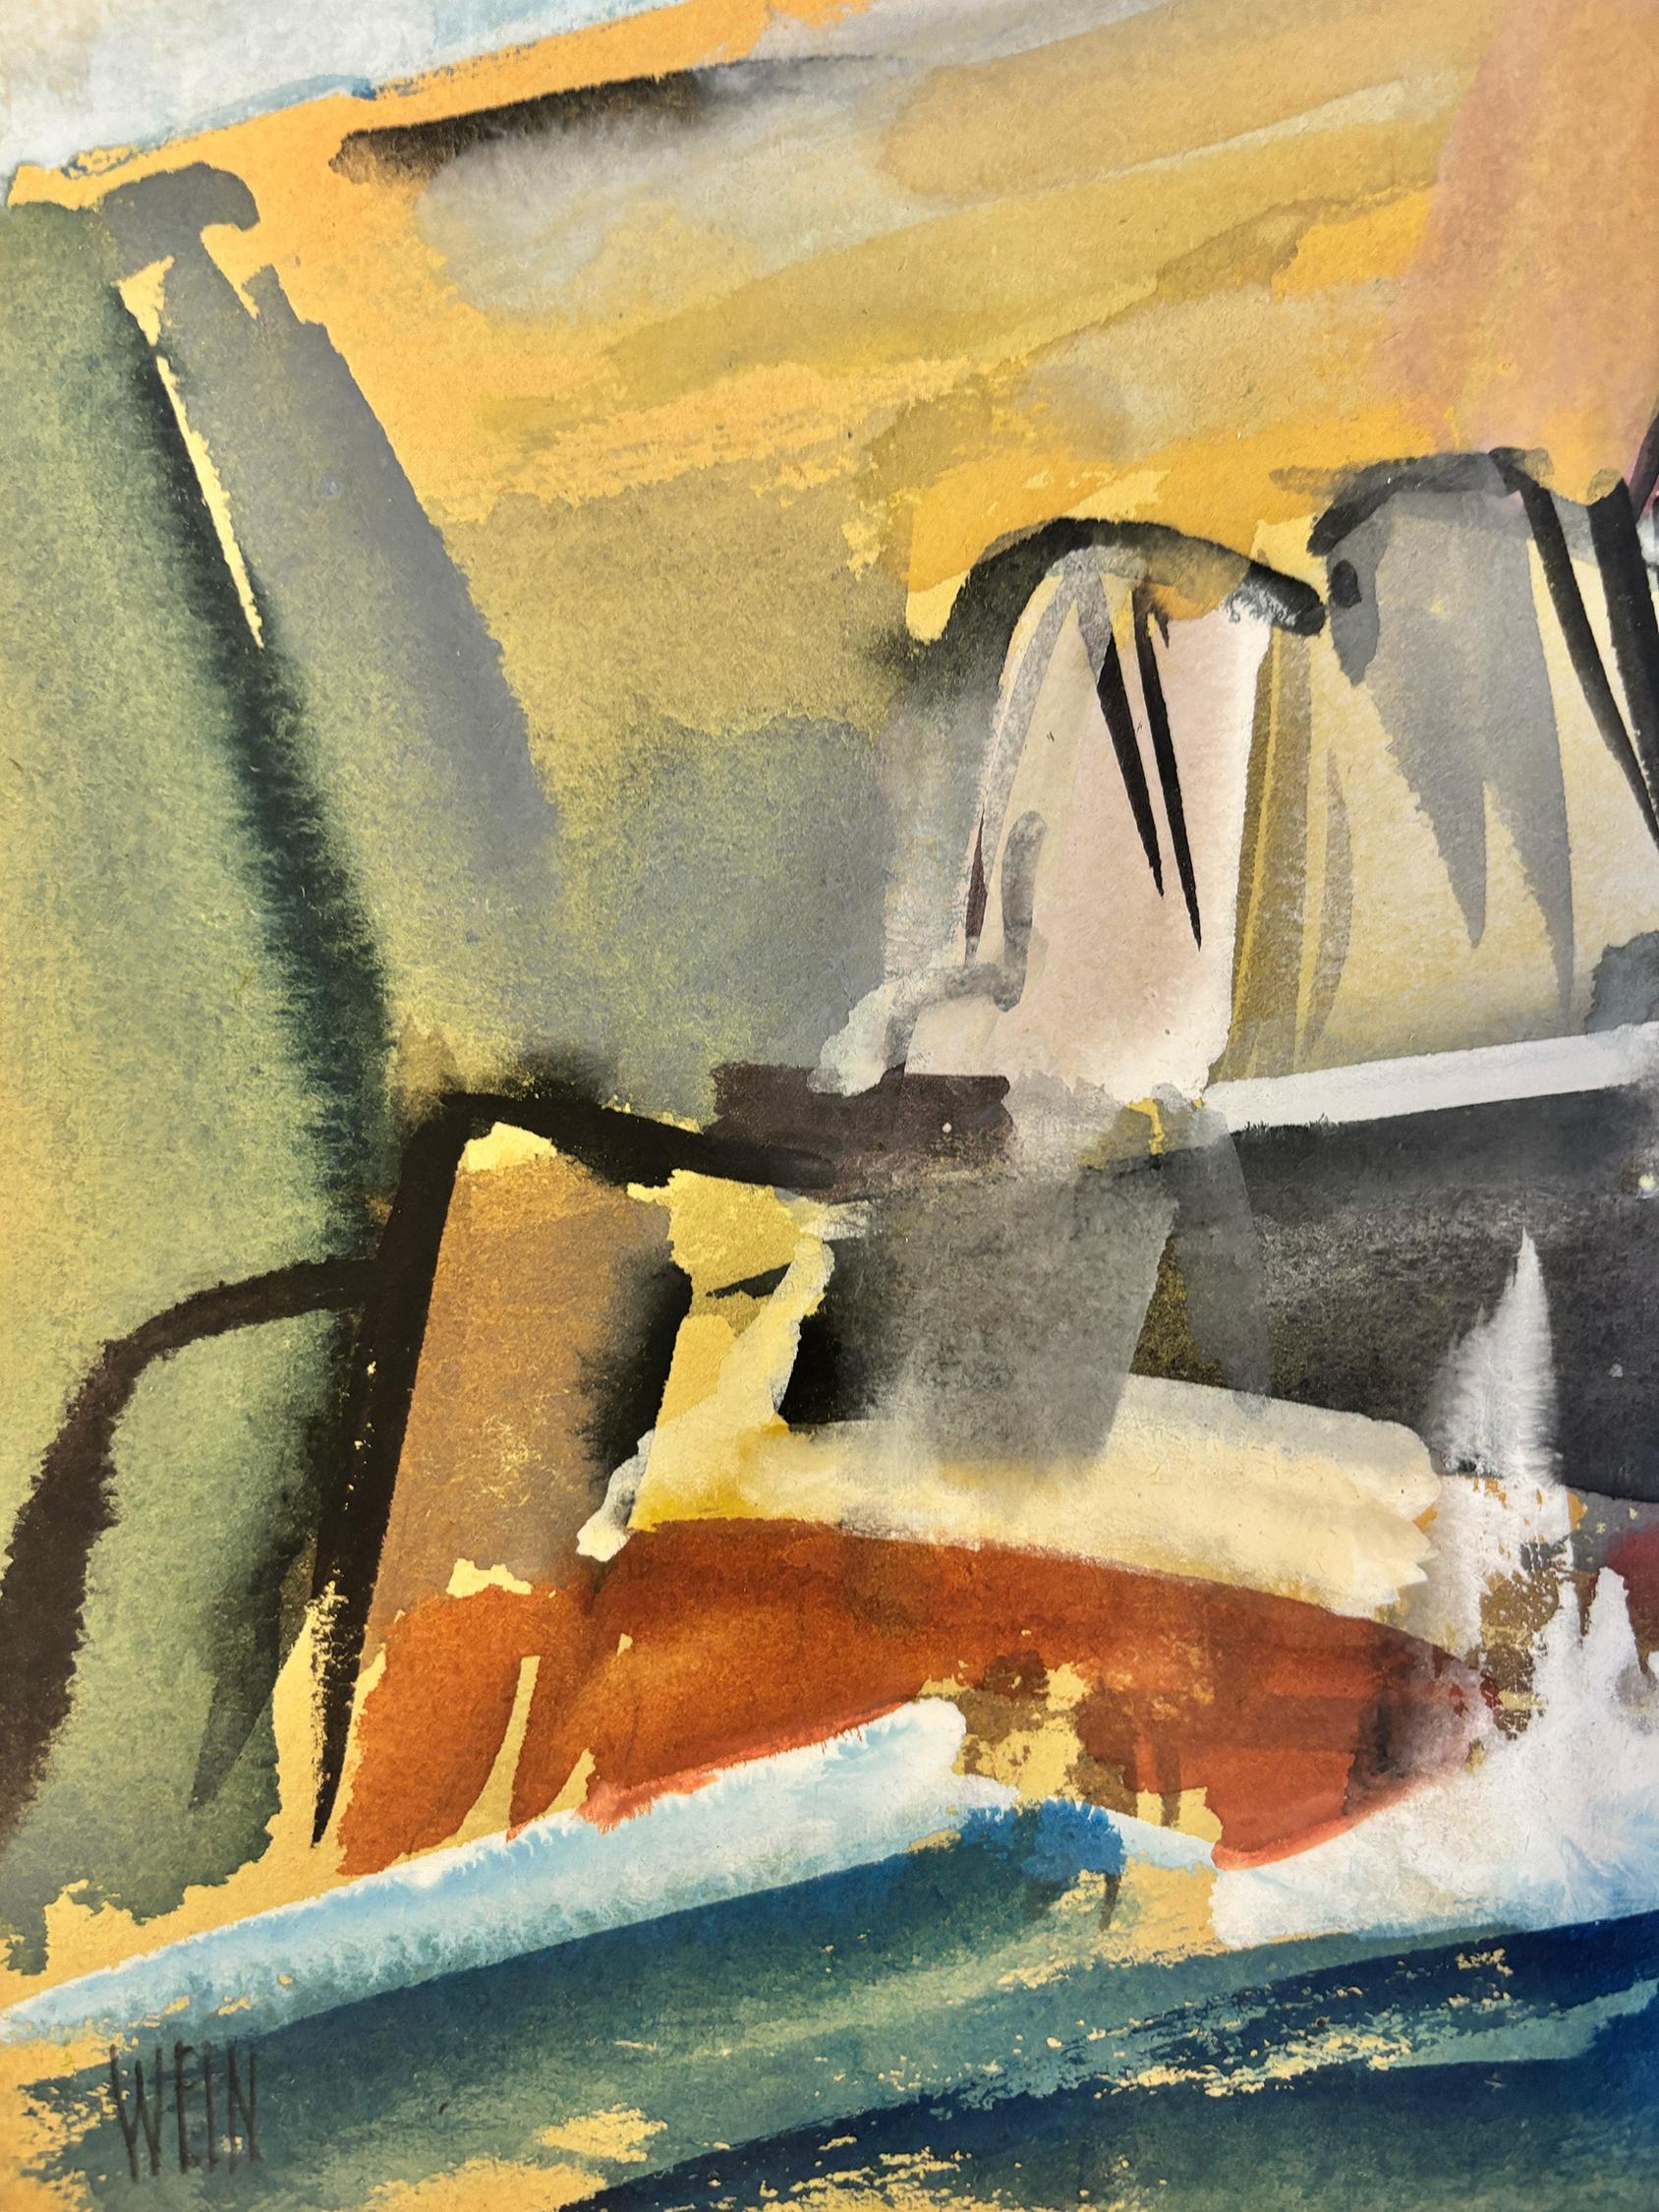 The Inlet ist eine ausdrucksstarke und lebendige Darstellung einer ruhigeren Bucht auf Monhegan Island.  Der Künstler hat hier eine Reihe von Werken geschaffen, die alle Körper mit Energie und expressionistischer Farbe darstellen. Dieses Werk ist